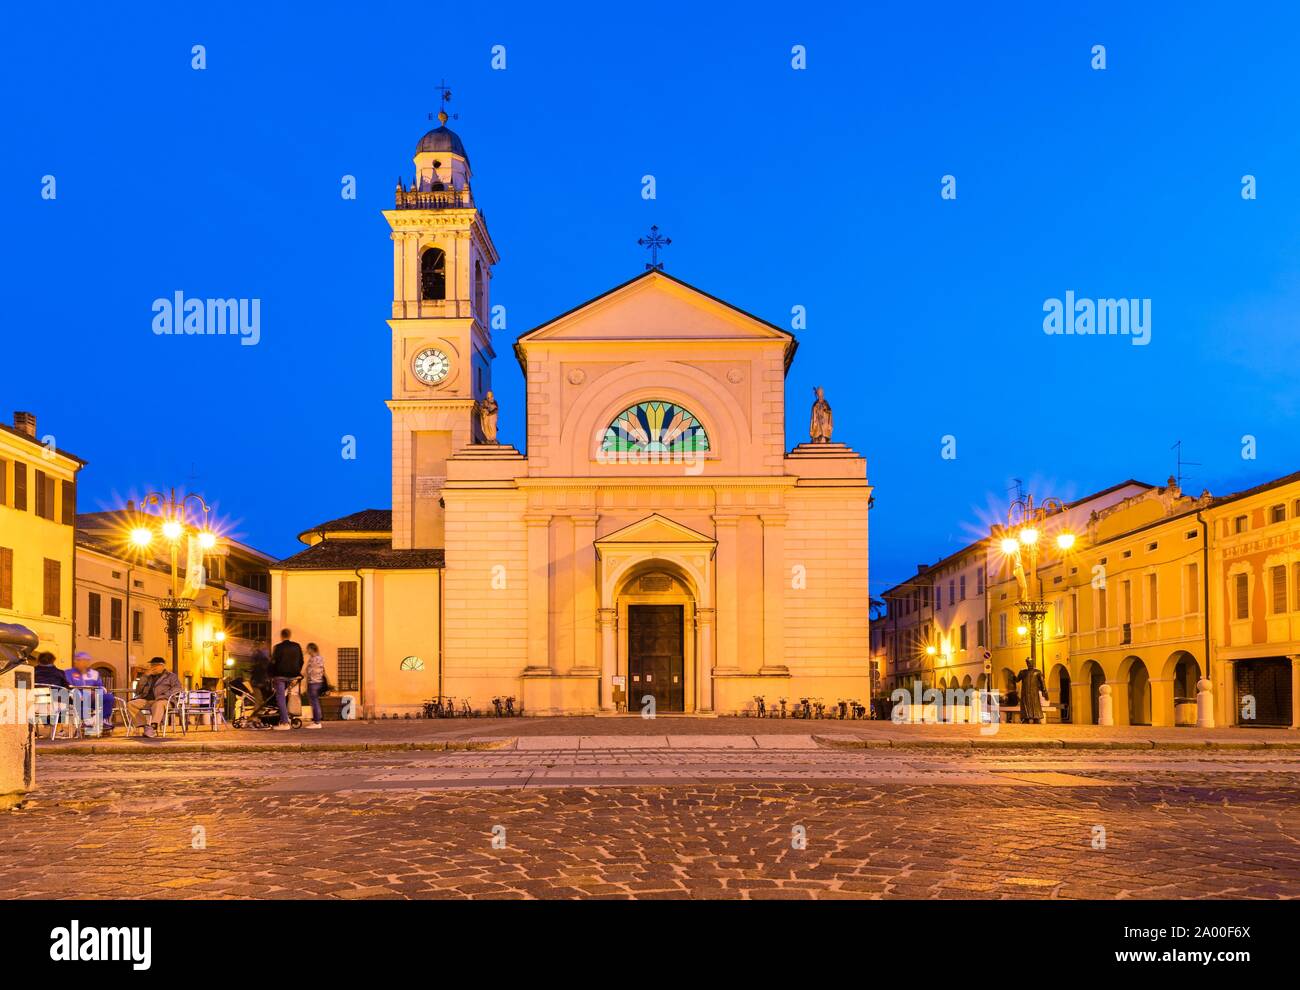 The Church of Santa Maria Nascente, location of the films of Don Camillo and Peppone, Brescello, Province of Reggio Emilia, Emilia-Romagna, Italy Stock Photo